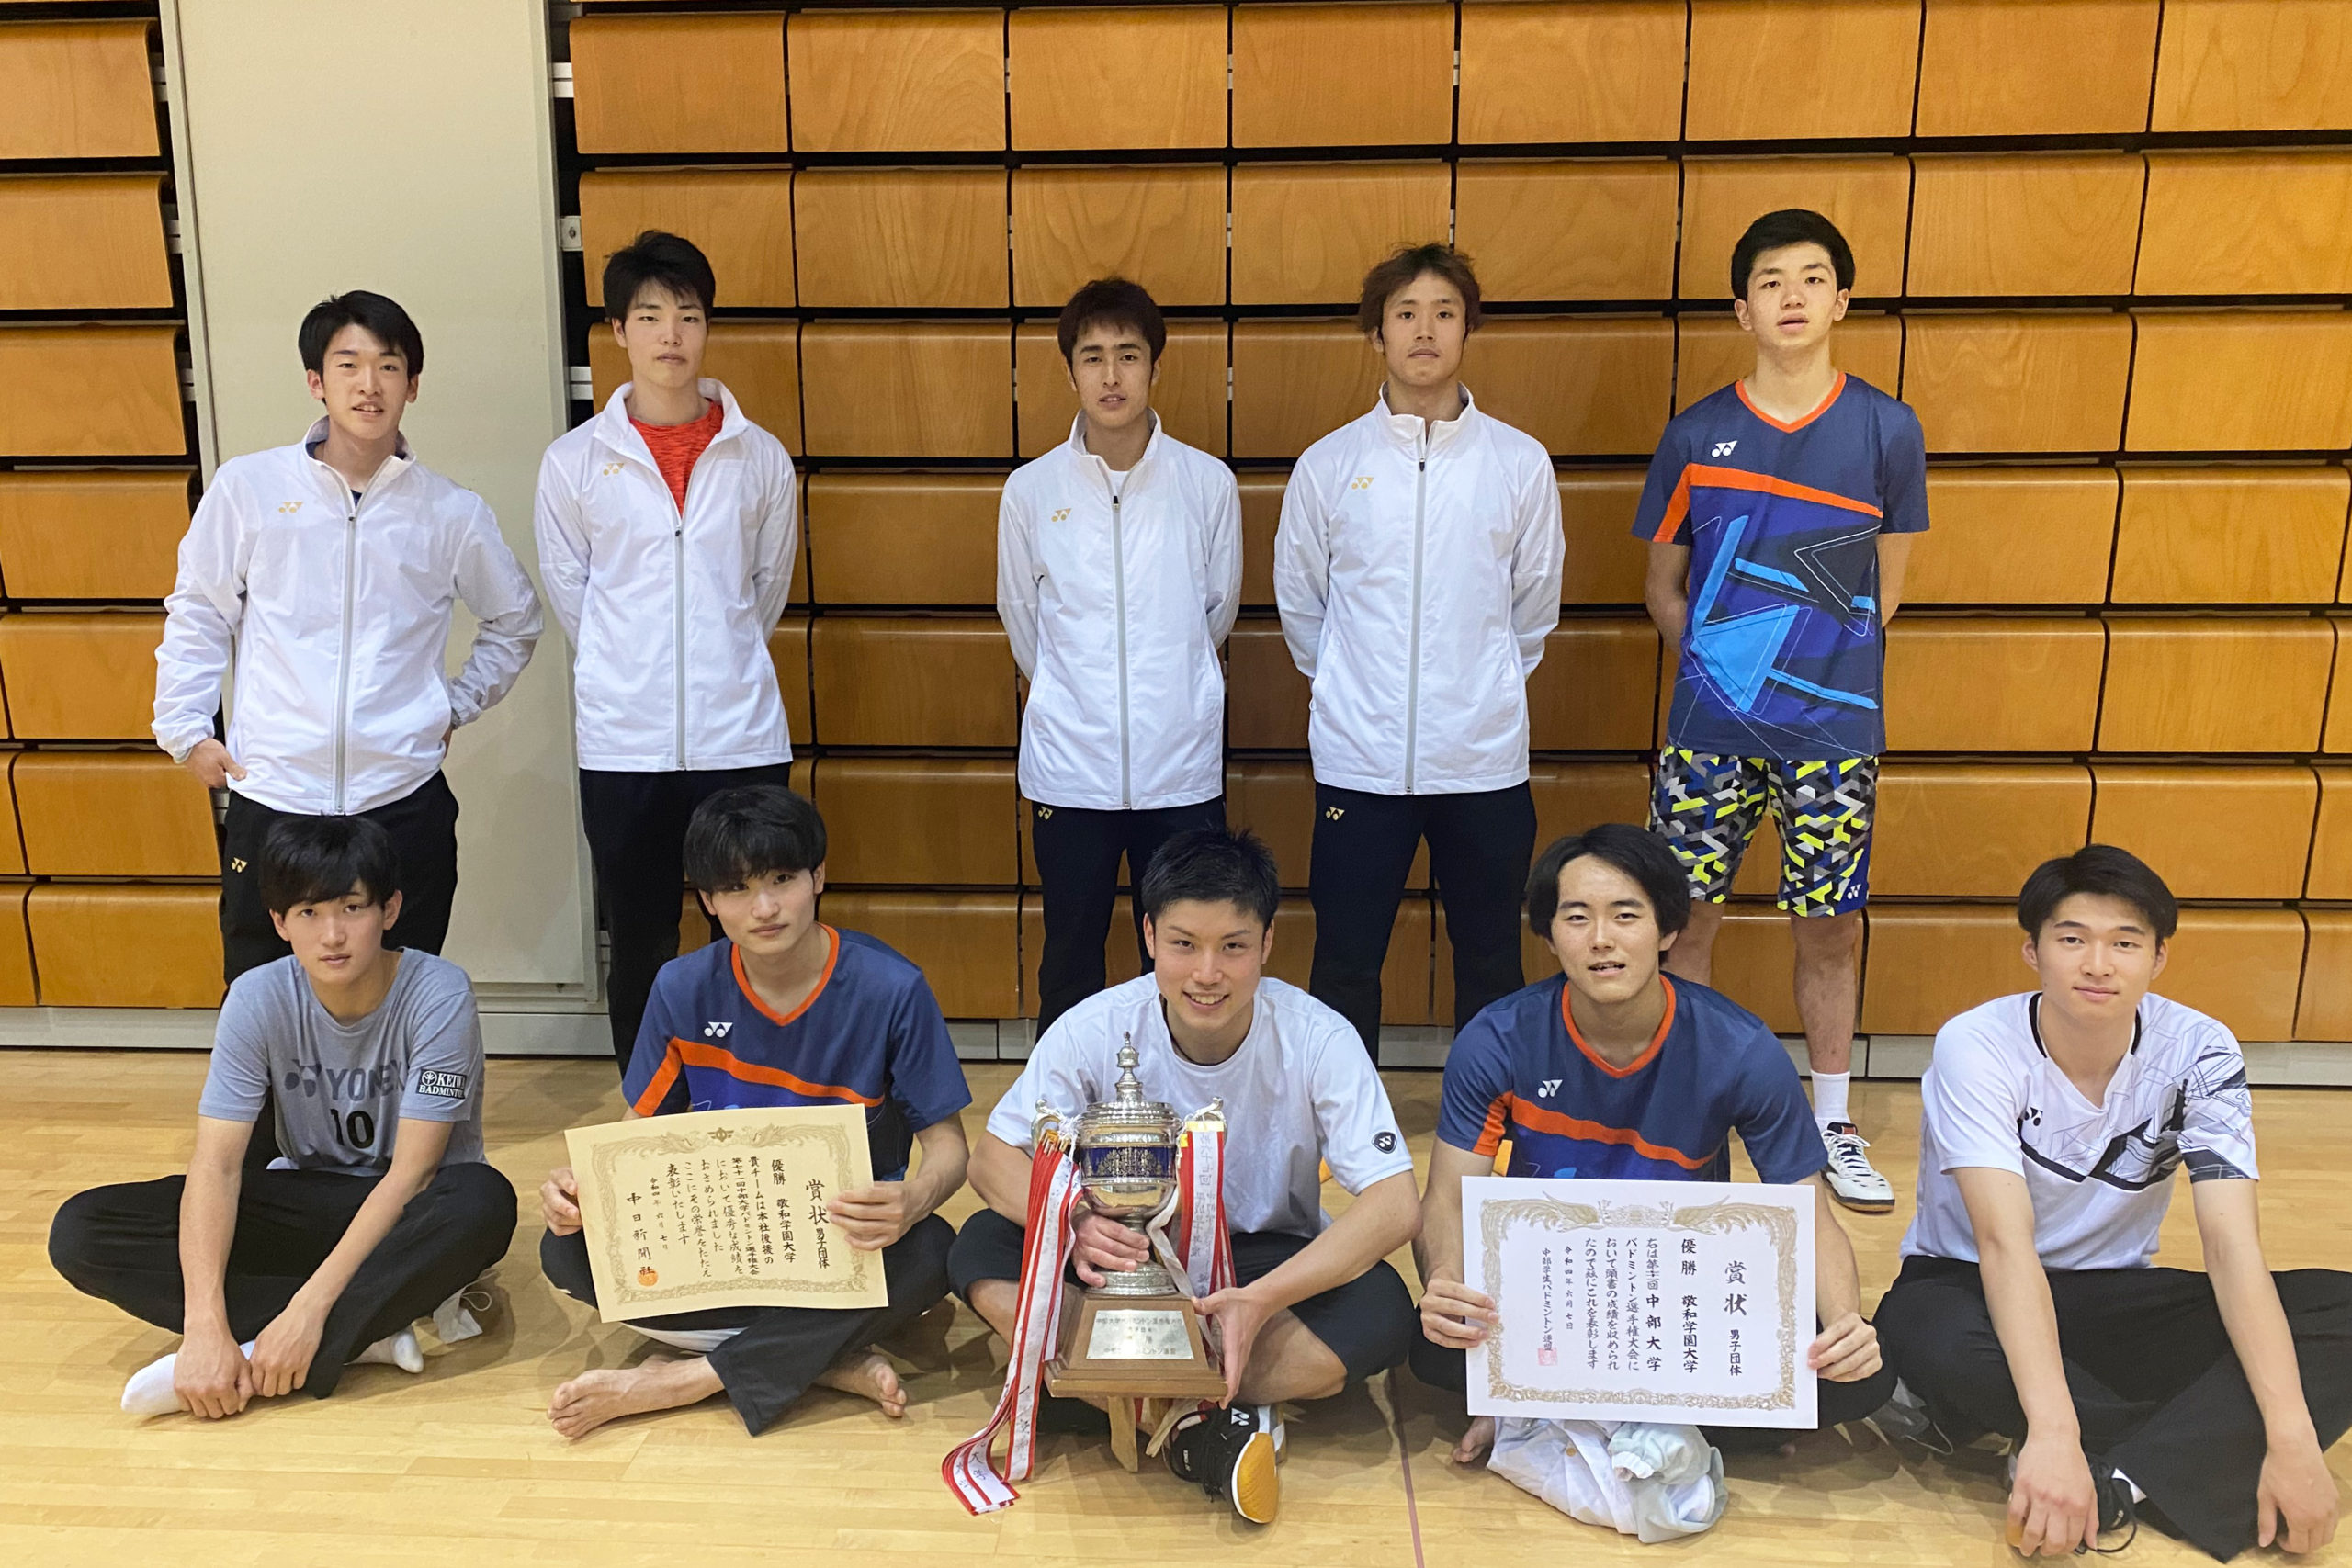 【敬和スポーツ】第70回中部学生バドミントン選手権大会で男子シングルス、男子ダブルス、男子団体の3冠を達成しました